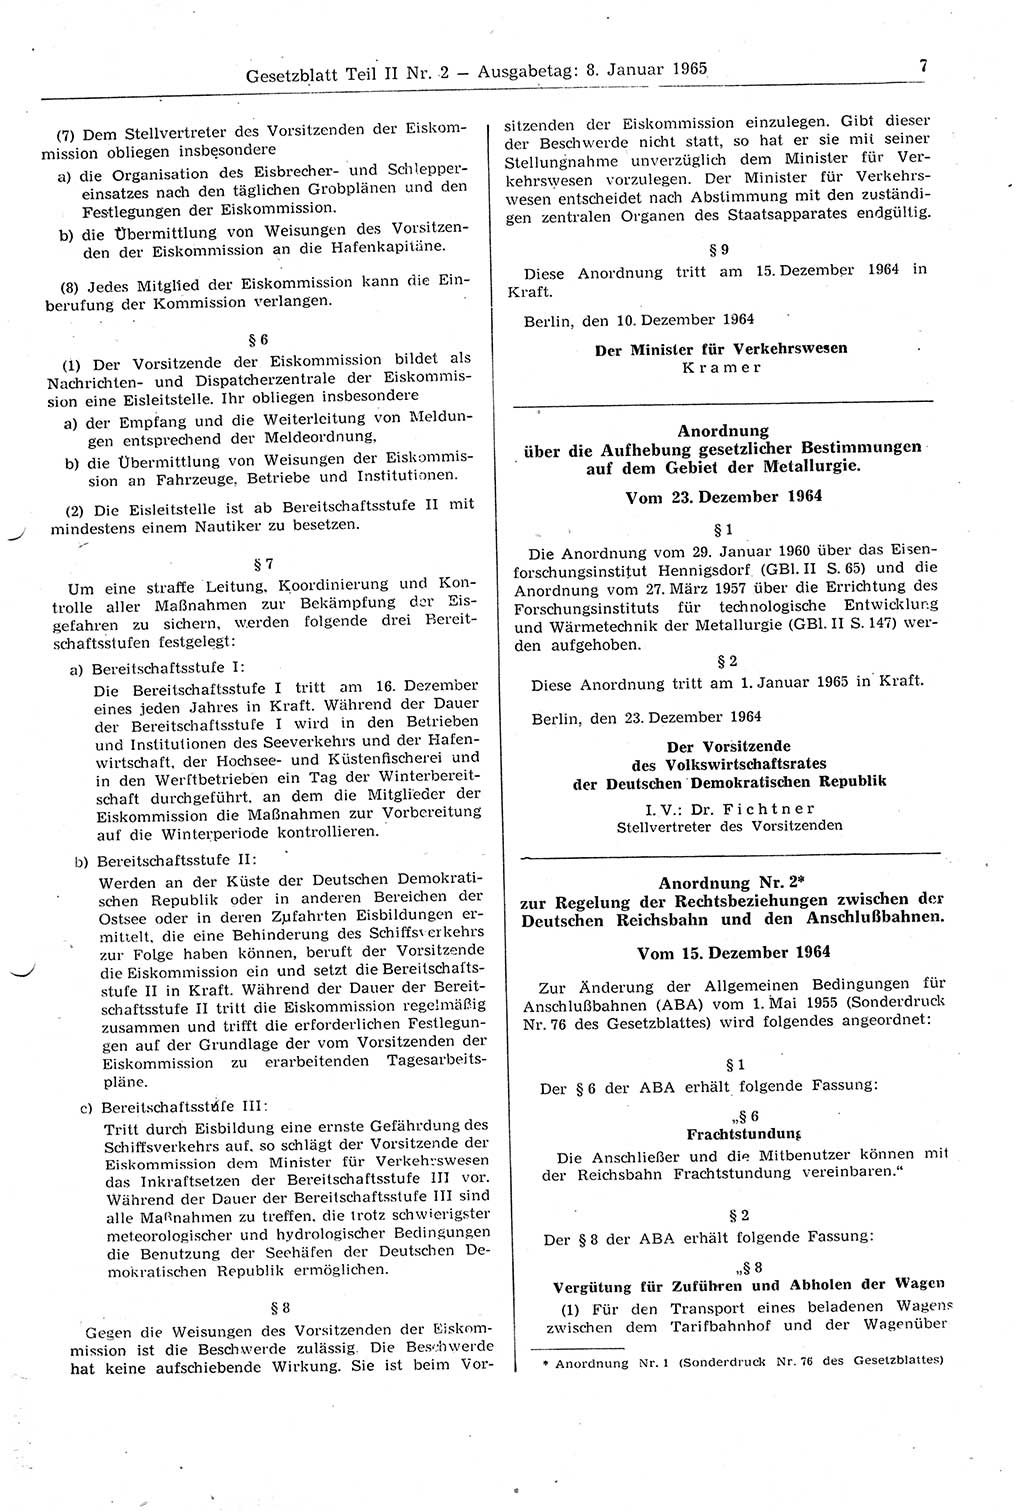 Gesetzblatt (GBl.) der Deutschen Demokratischen Republik (DDR) Teil ⅠⅠ 1965, Seite 7 (GBl. DDR ⅠⅠ 1965, S. 7)